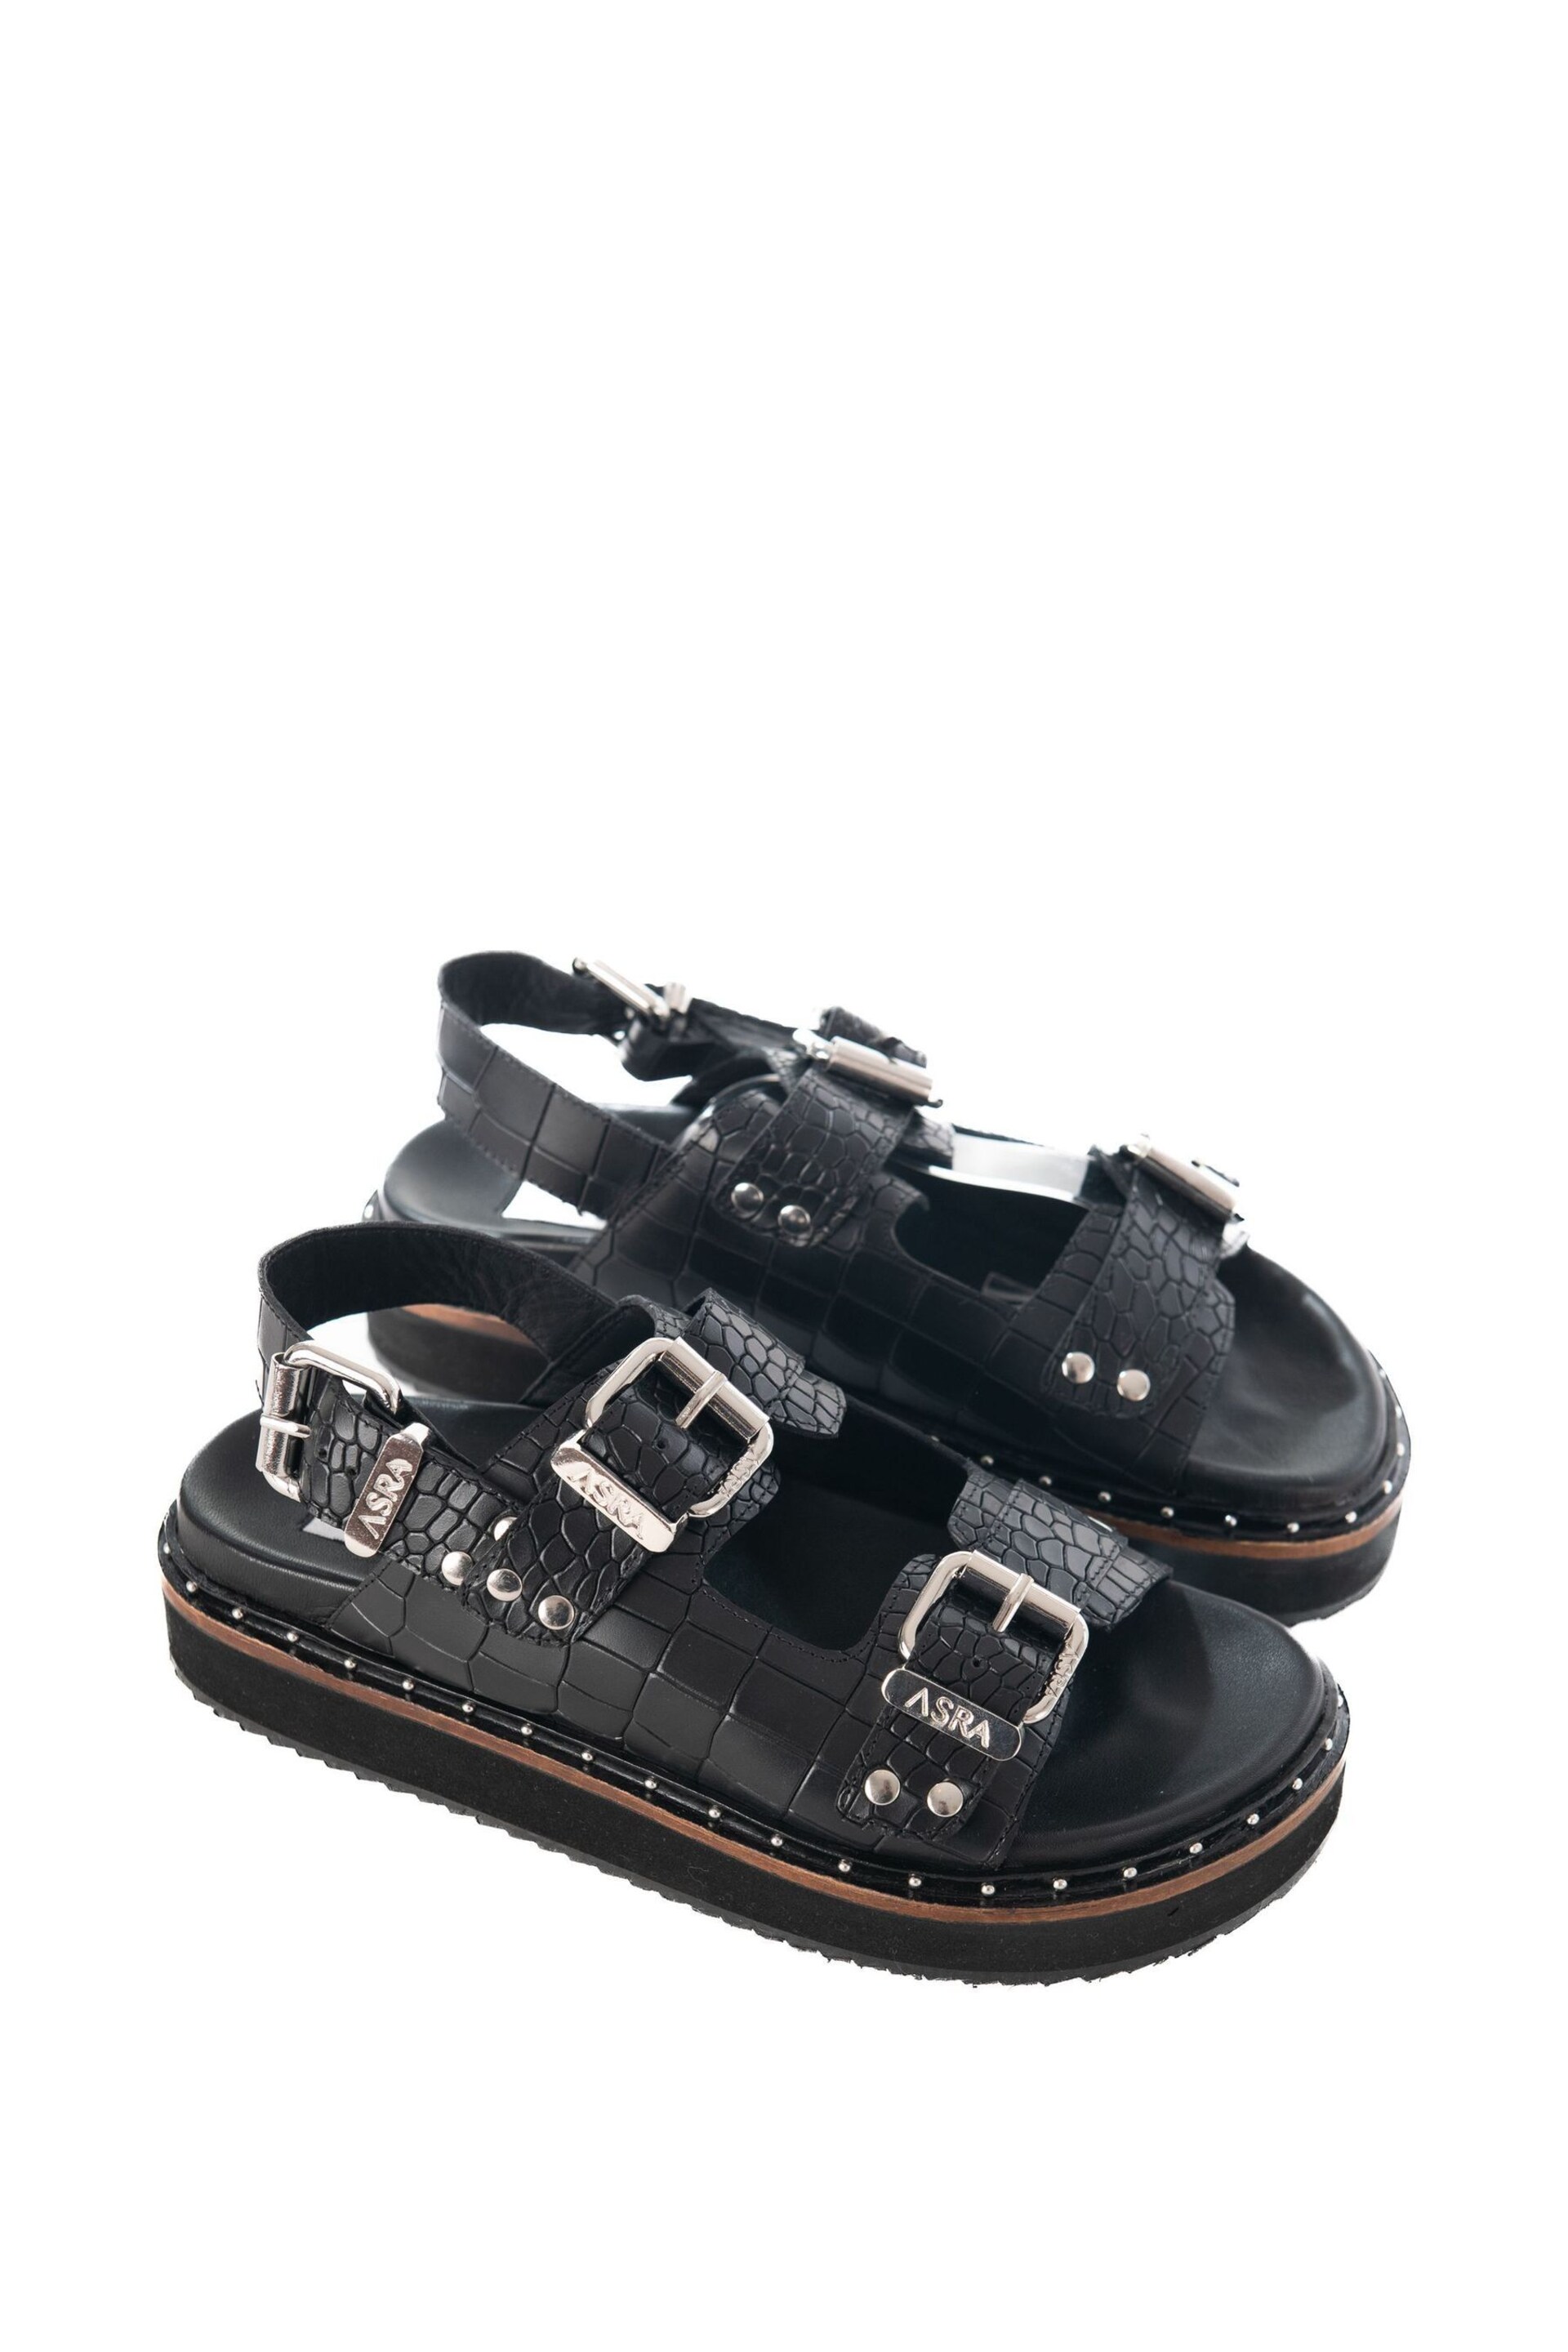 ASRA London Sami Croc Leather Studded Black Sandals - Image 2 of 4